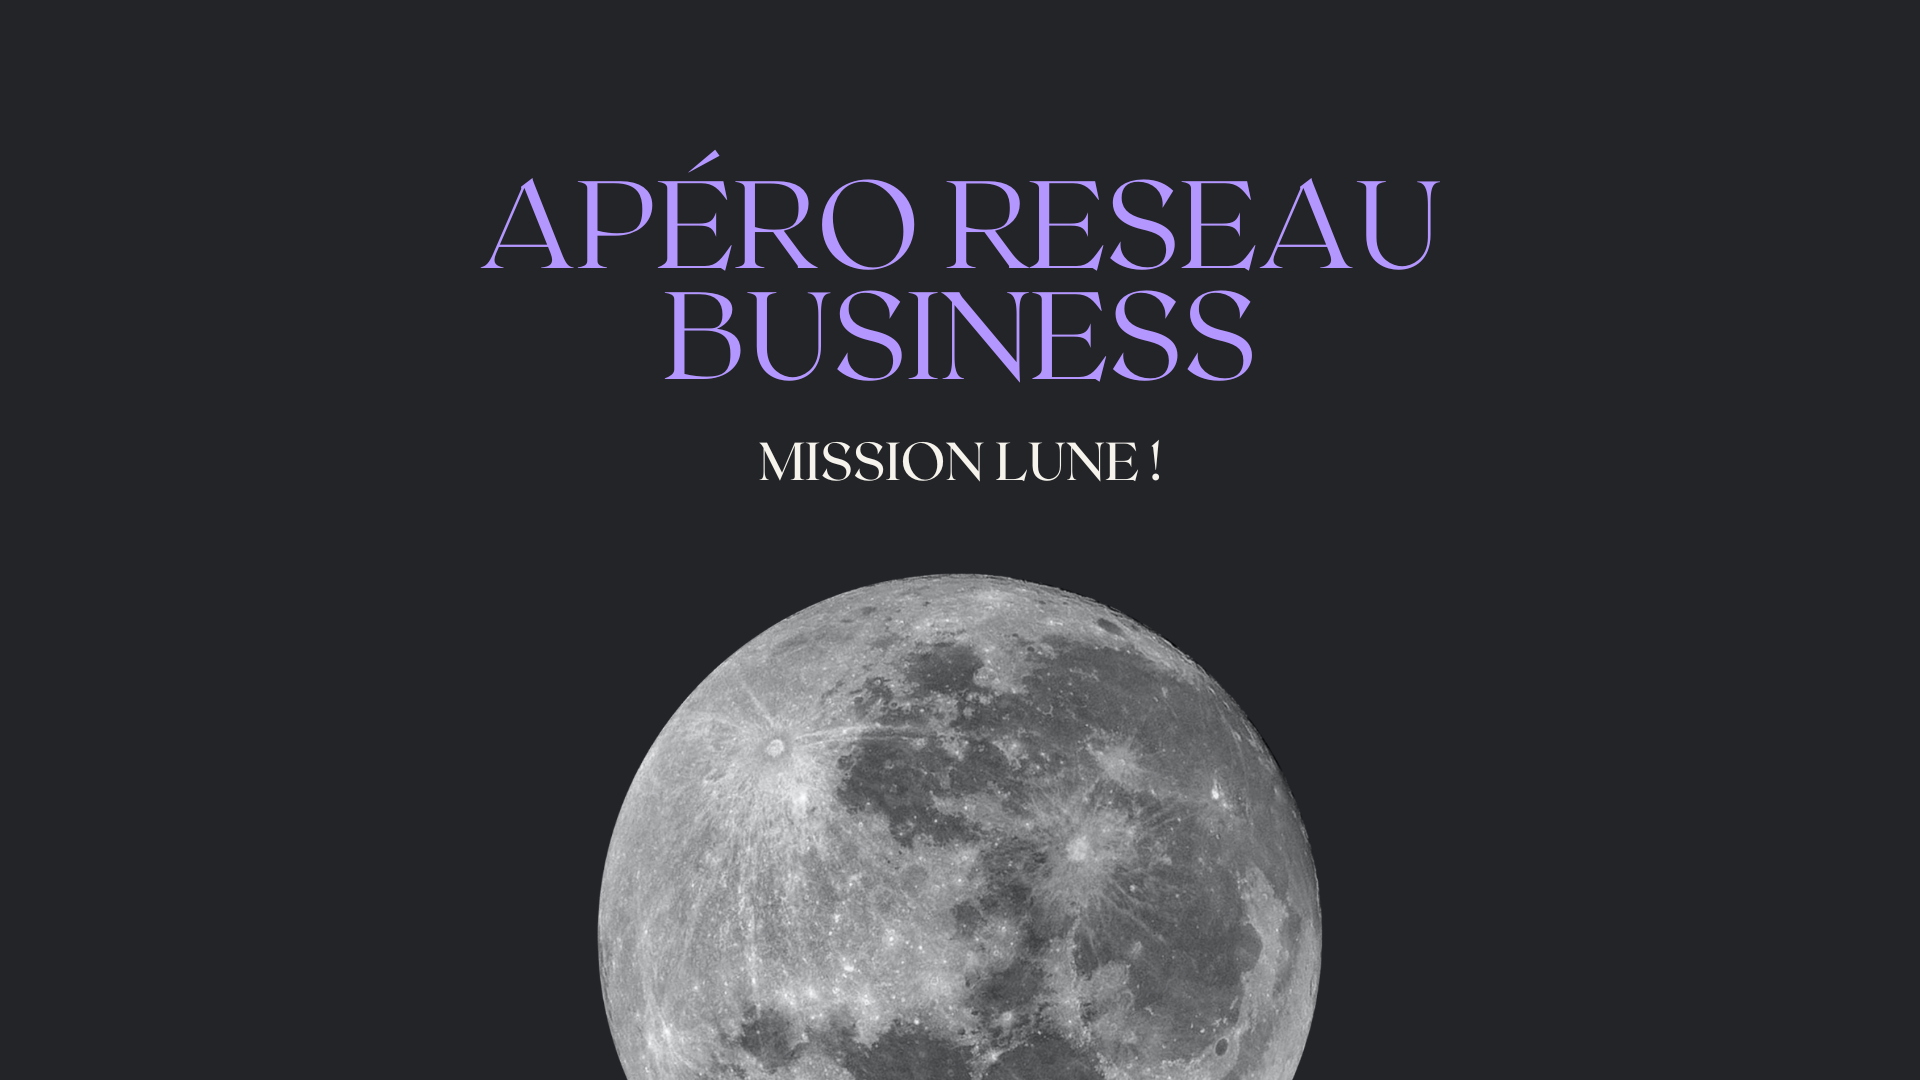 Apéro Réseau Business - Mission lune